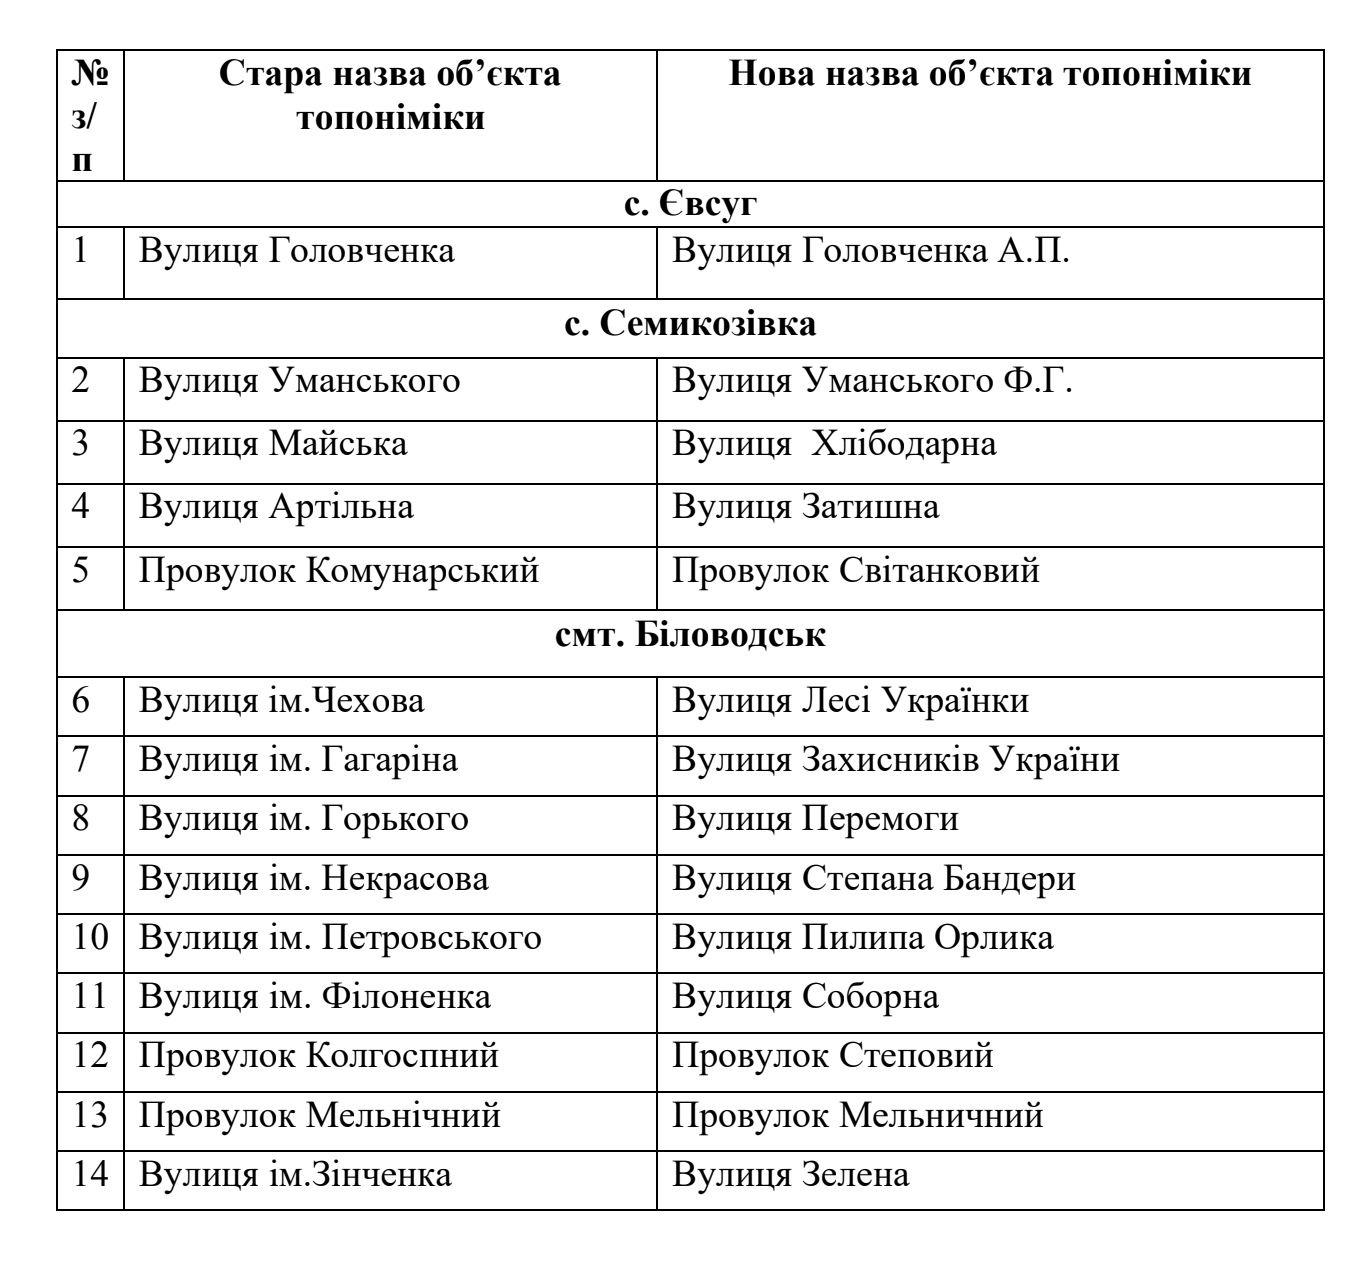 "Декомунізація" на Біловодщині: перейміновано 67 обʼєктів